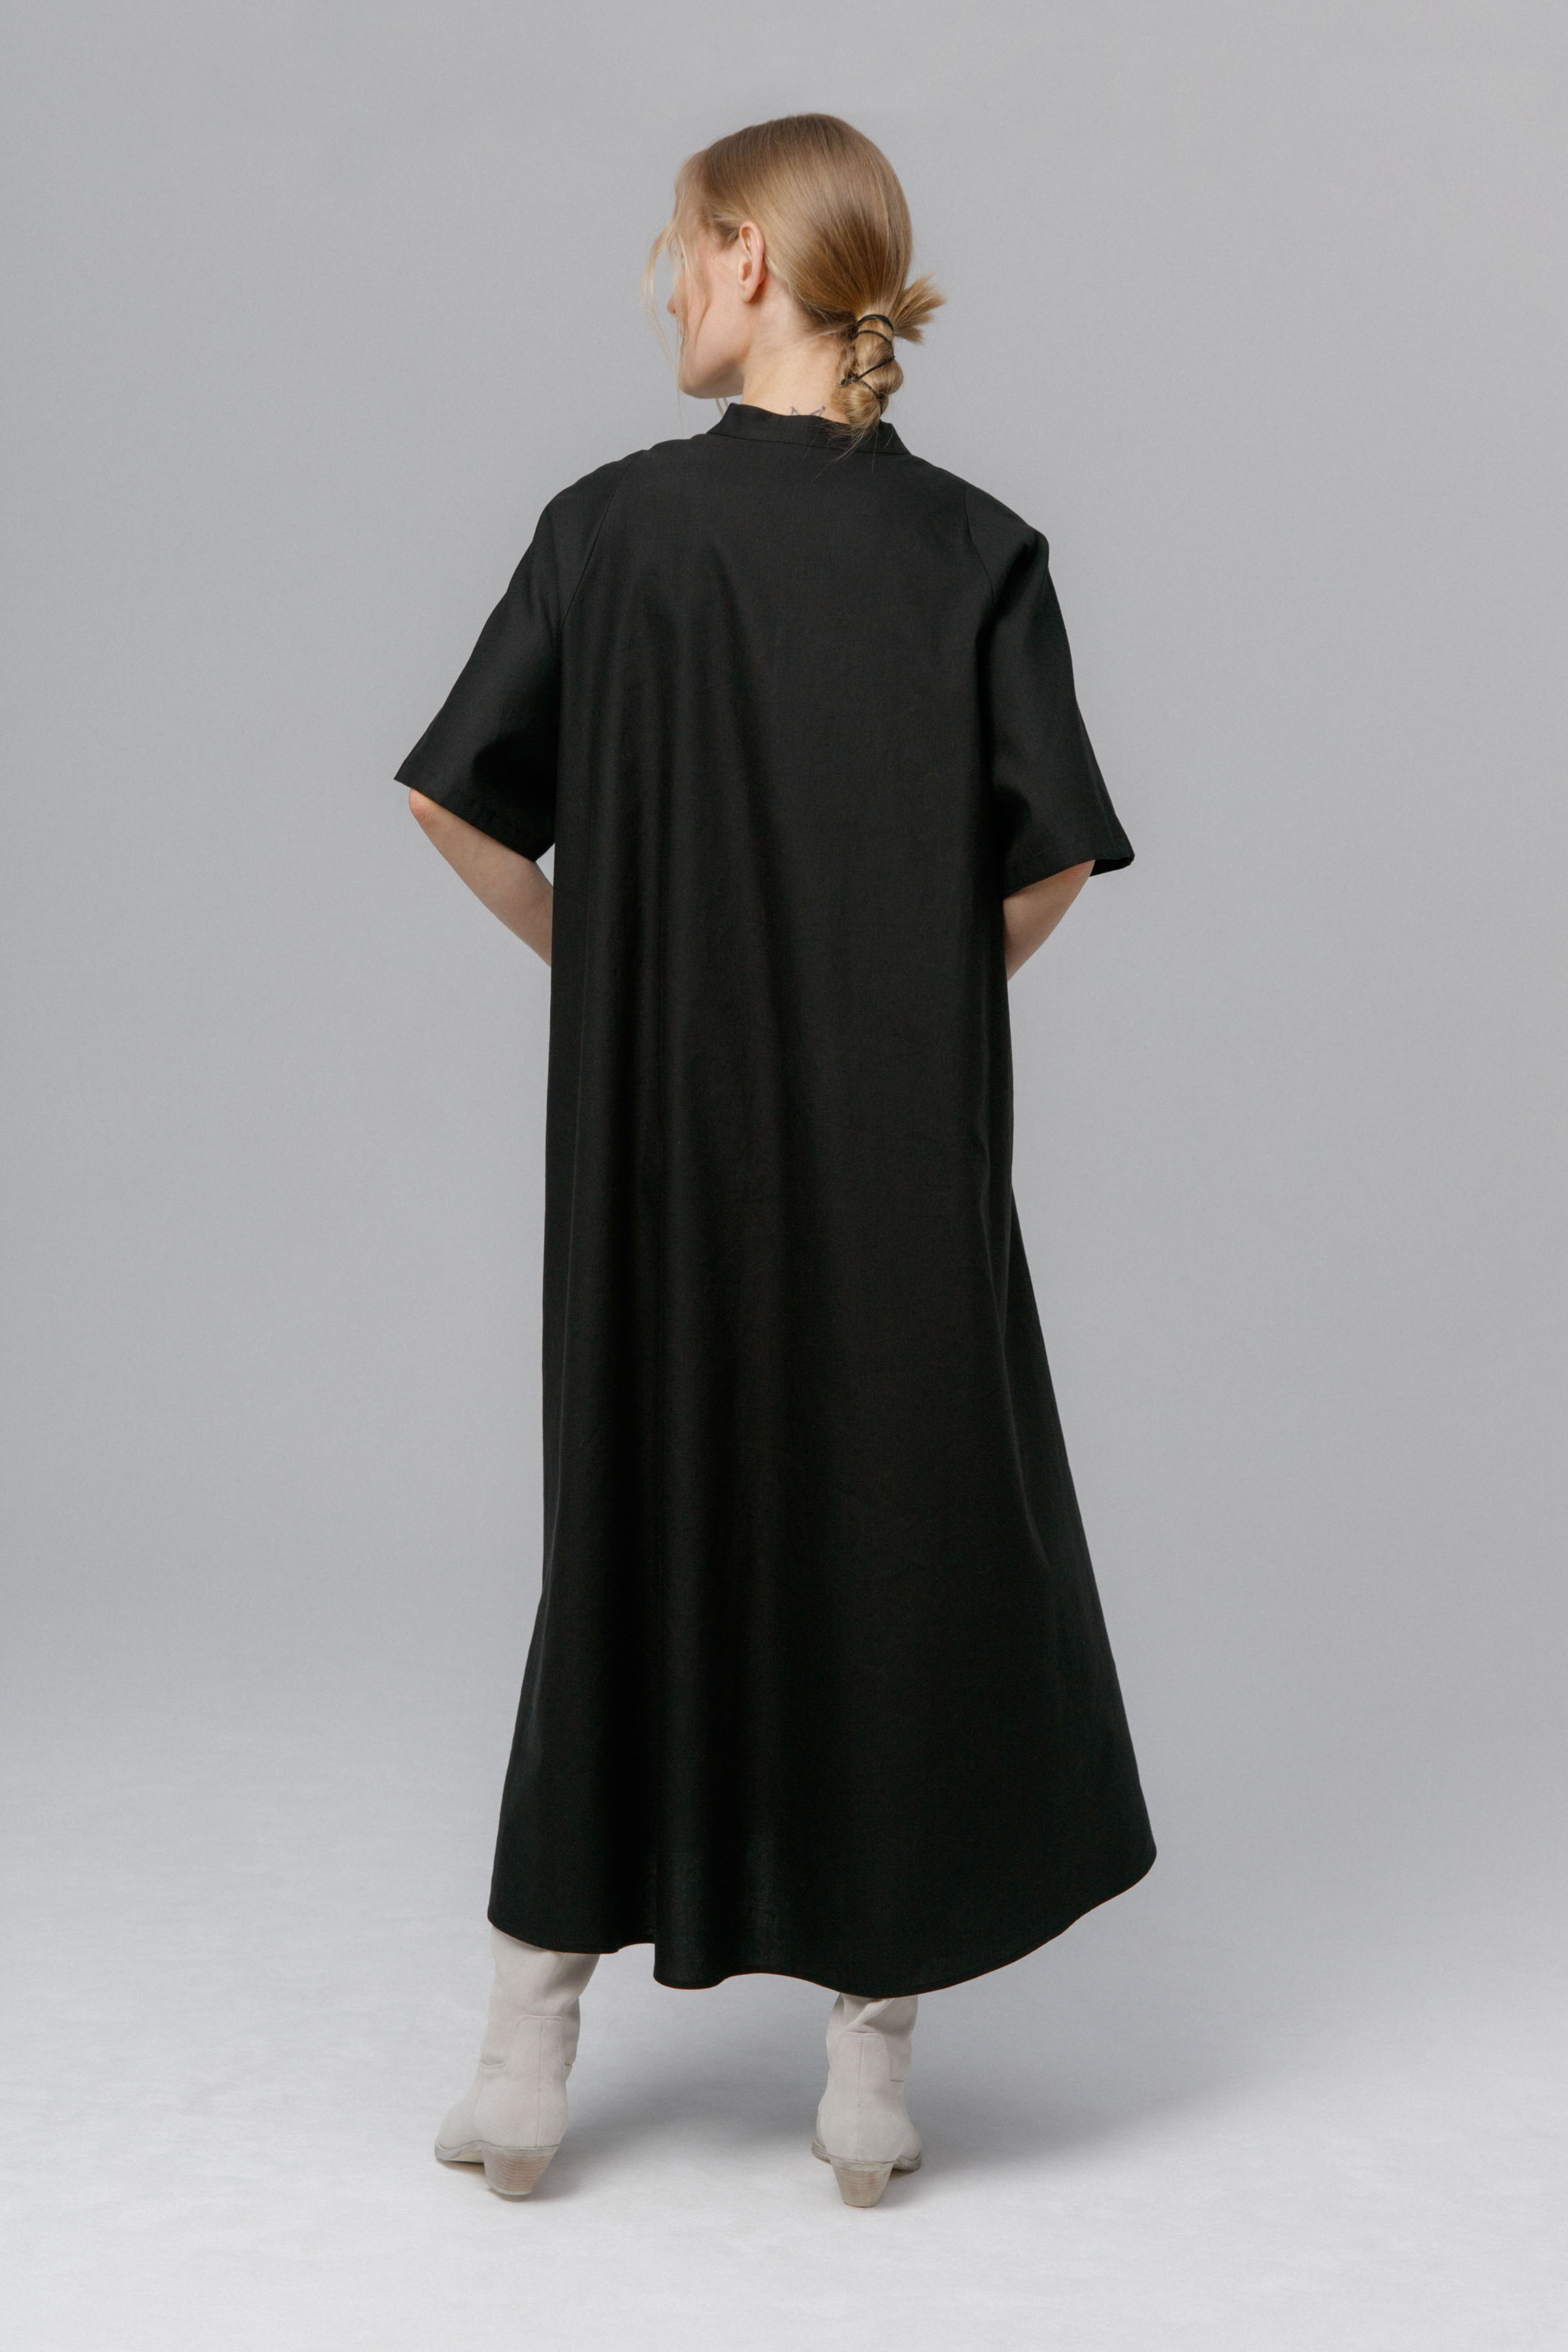 Платье Реглан, завязки, лён 00 Черный (noir) от Lesel (Лесель)! Заказывайте по ✆ 8 (800) 777 02 37